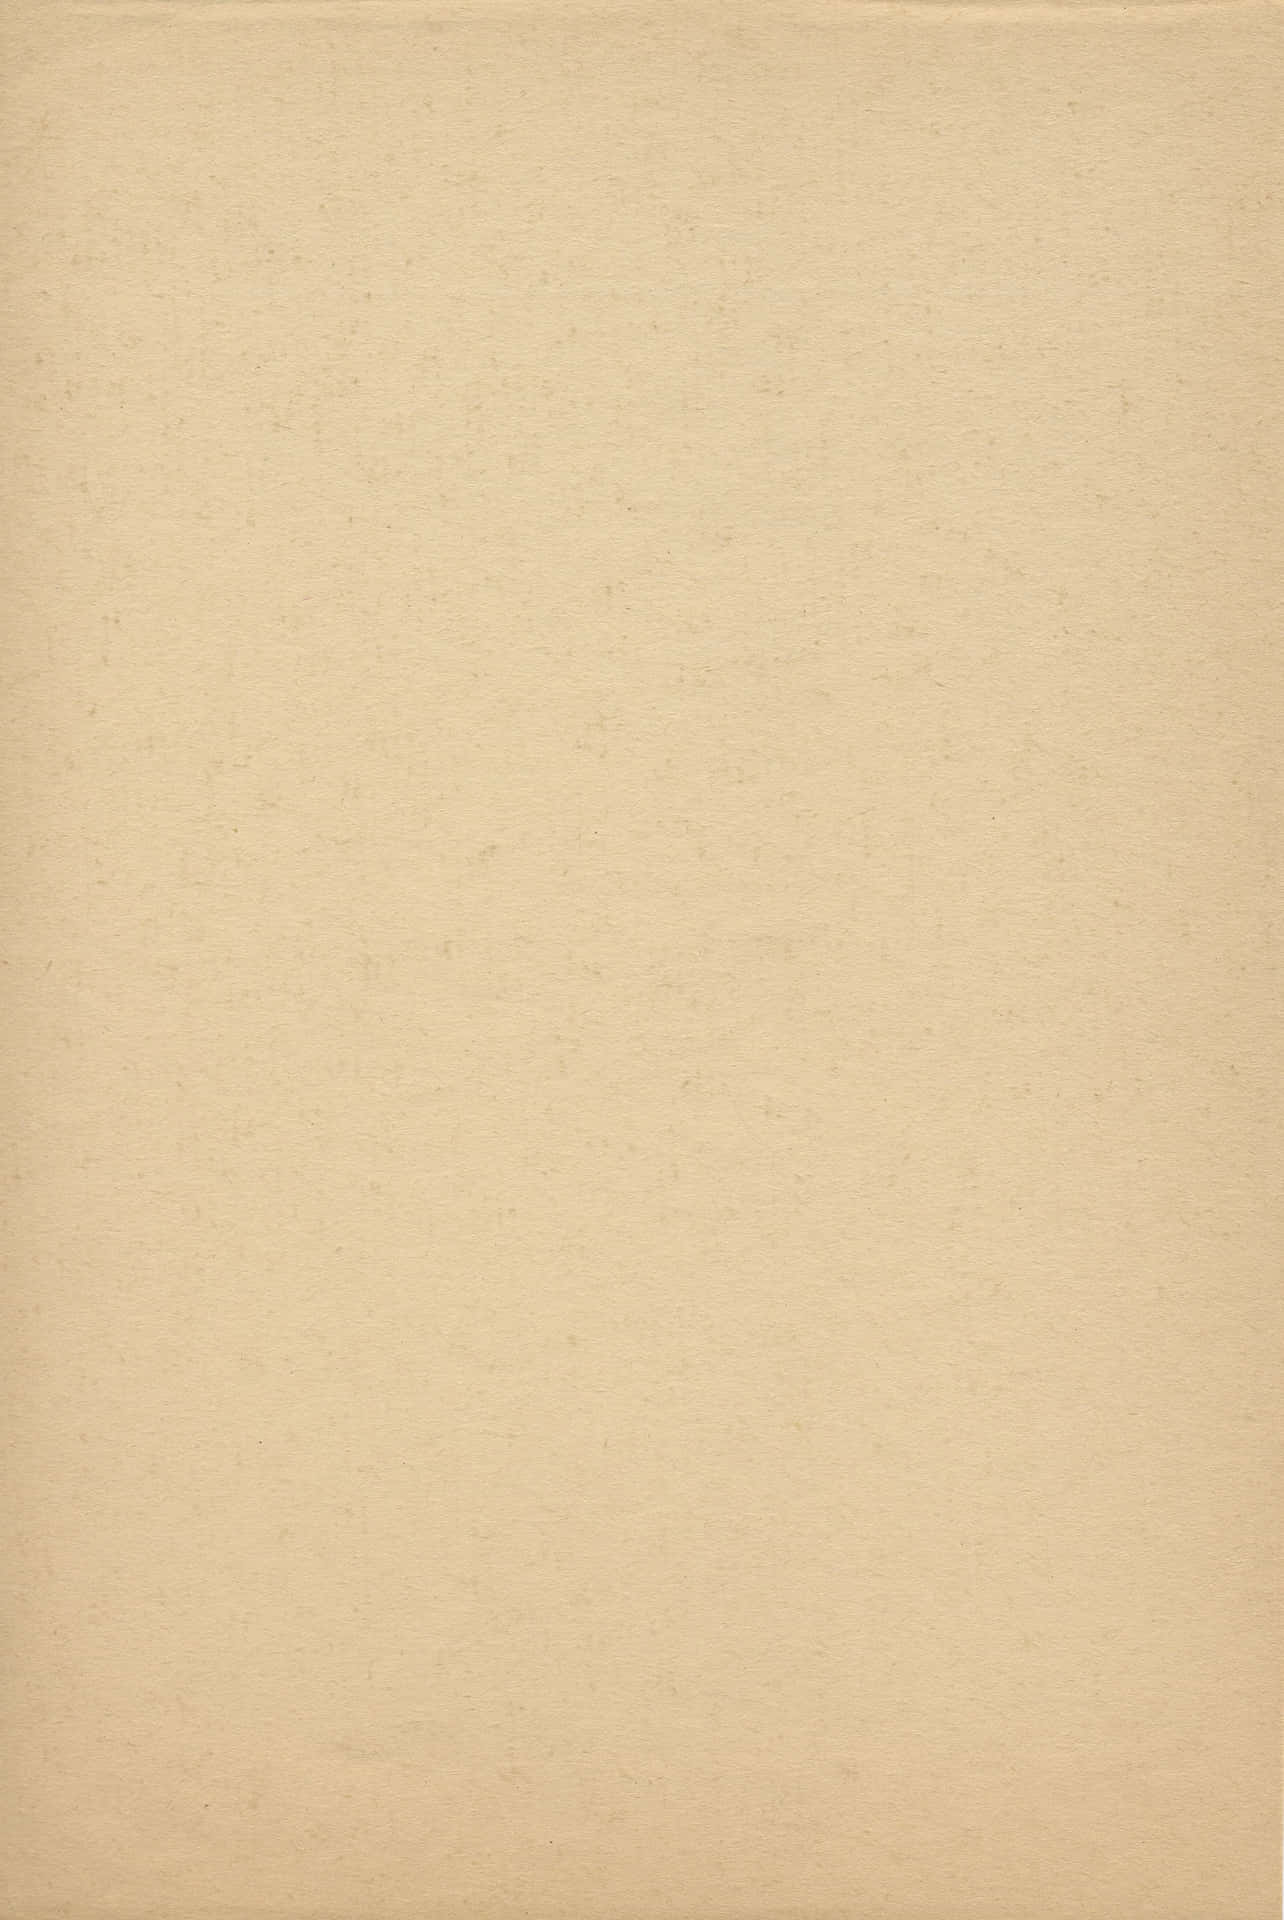 Hintergrundaus Pergamentpapier In Hellbrauner Farbe.